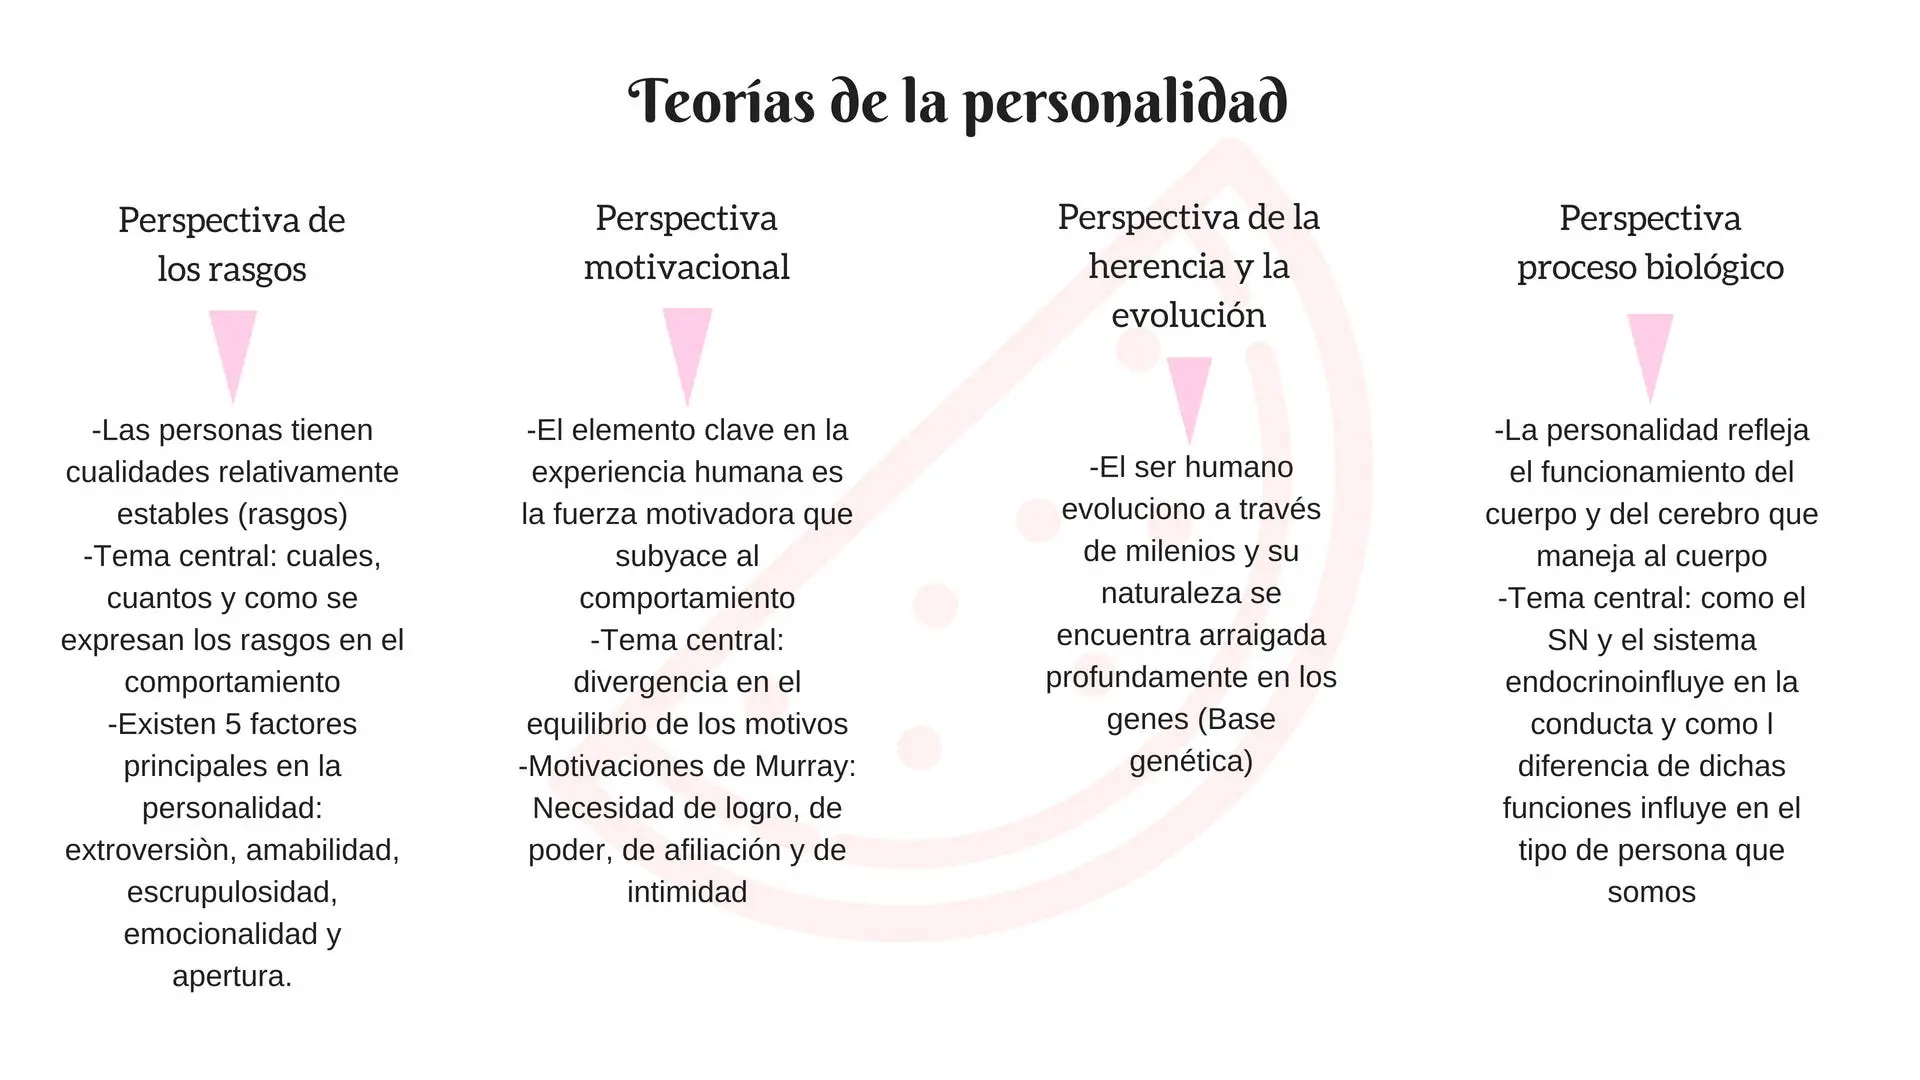 diferencia entre persona y personalidad en psicologia - Qué es la persona según la psicología